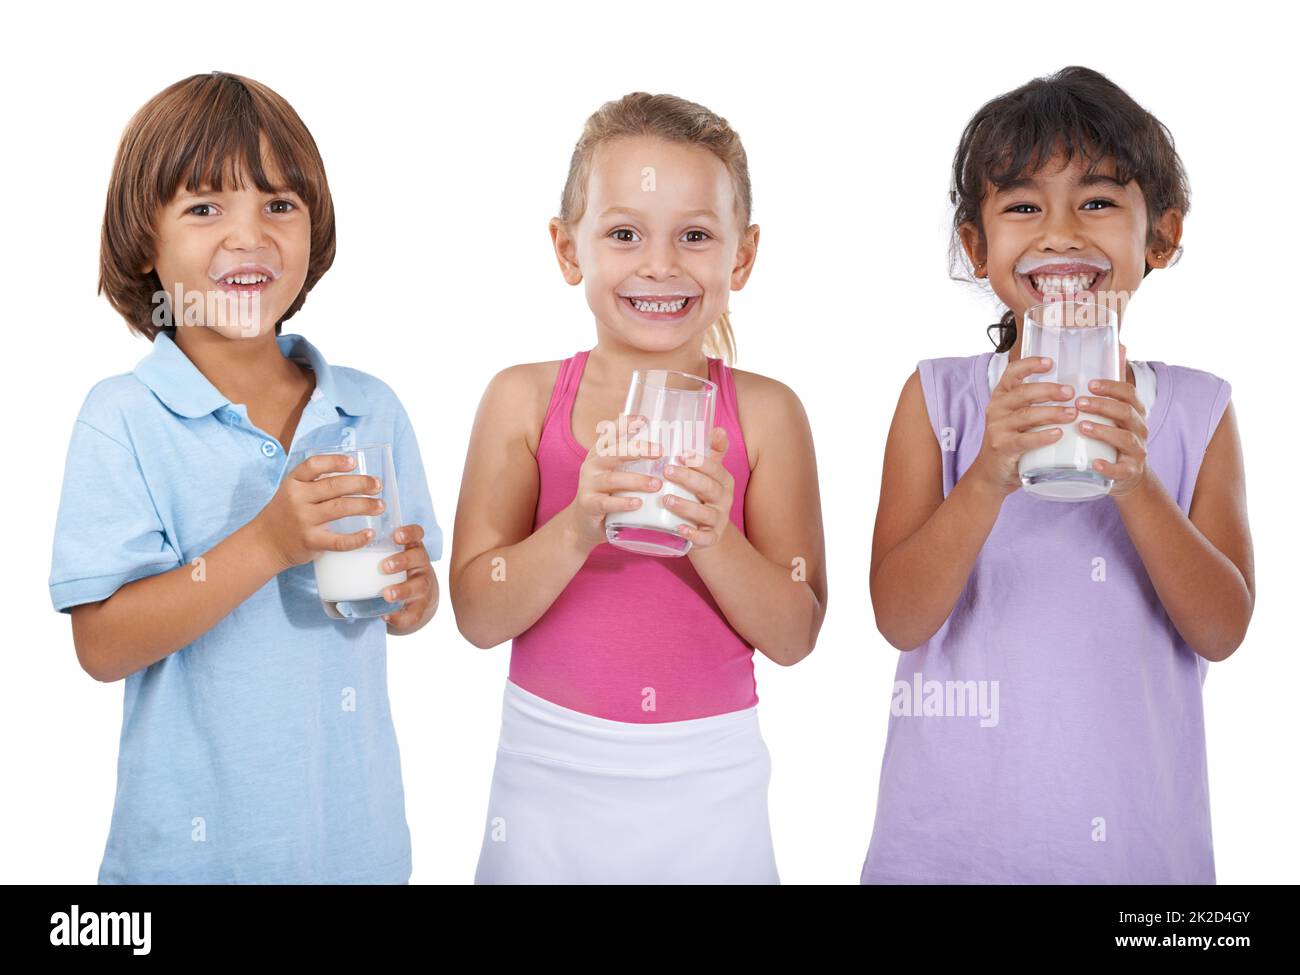 ..Habe Milch. Eine Gruppe von drei kleinen Kindern mit Milchgläsern. Stockfoto